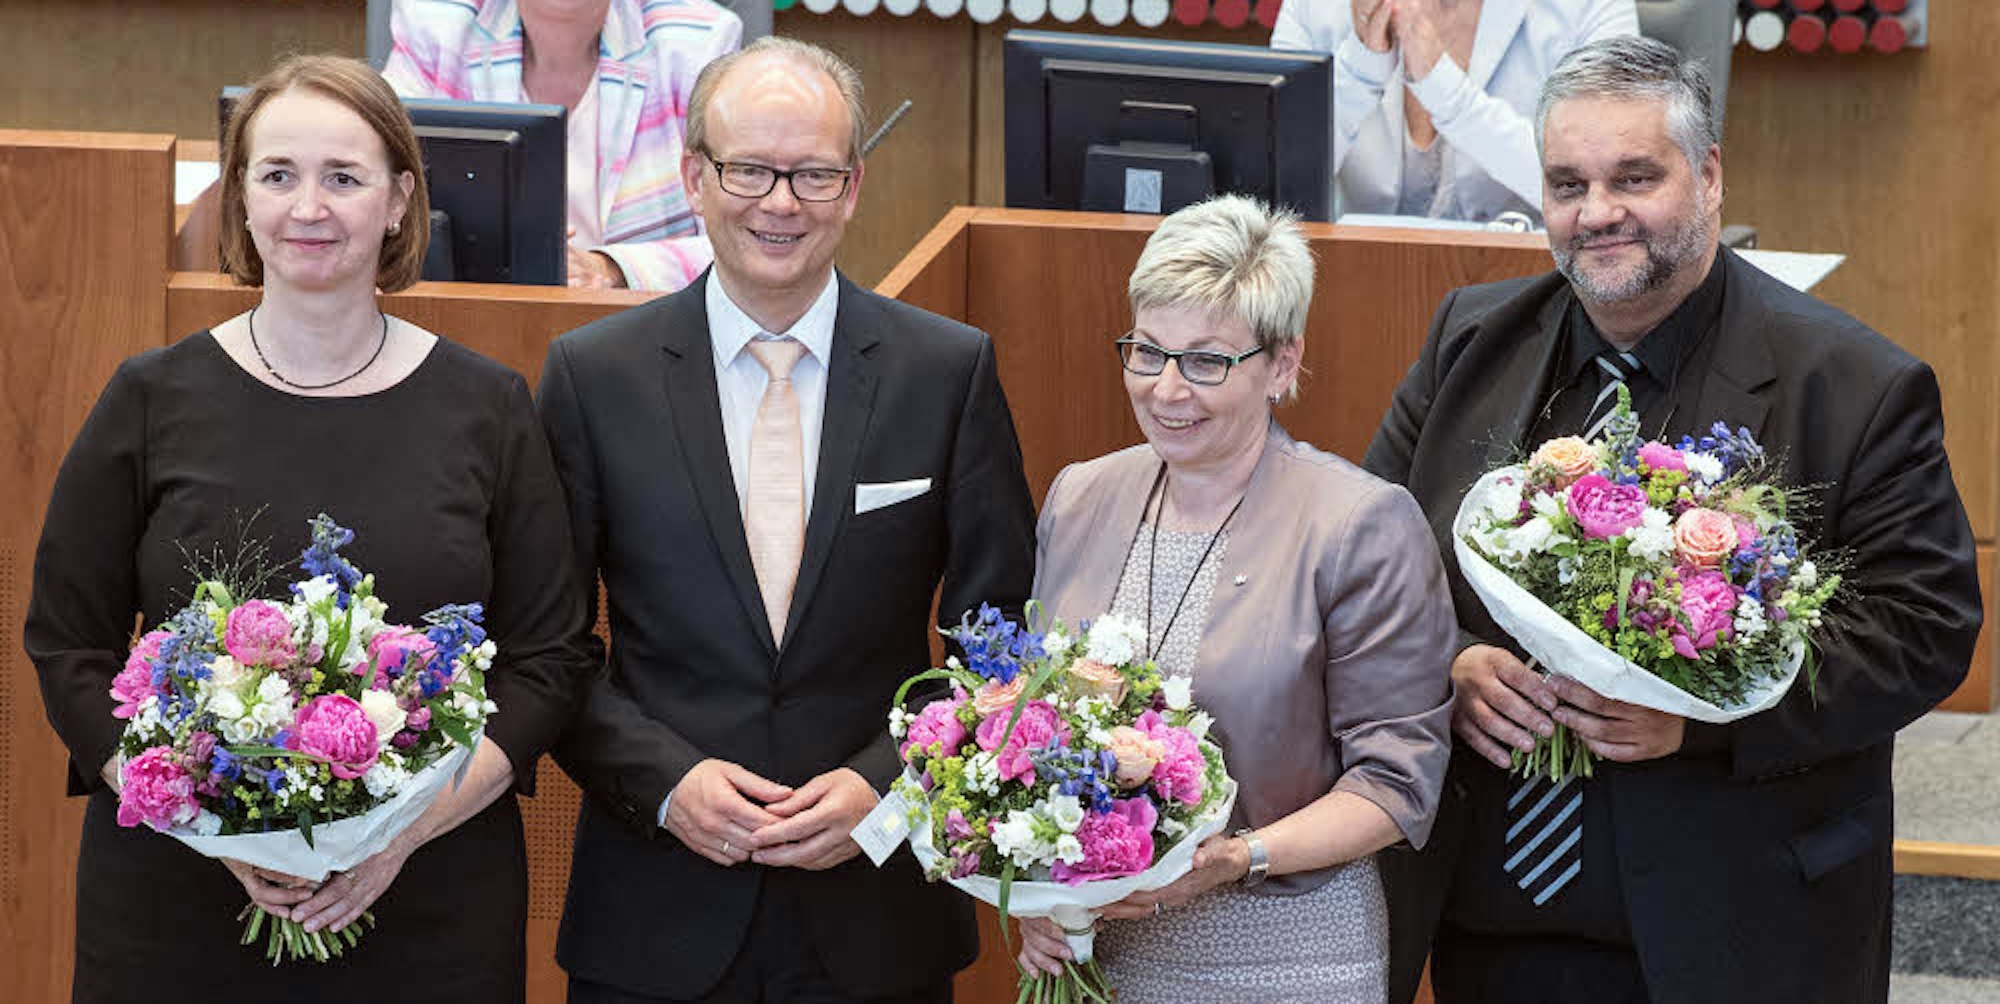 Das neue Präsidium des NRW-Landtags: Landtagspräsident André Kuper (CDU 2.v.l.) und seine Stellvertreter Carina Gödecke (SPD 2.v.r.), Angela Freimuth (FDP, l) und Oliver Keymis (Grüne,r).